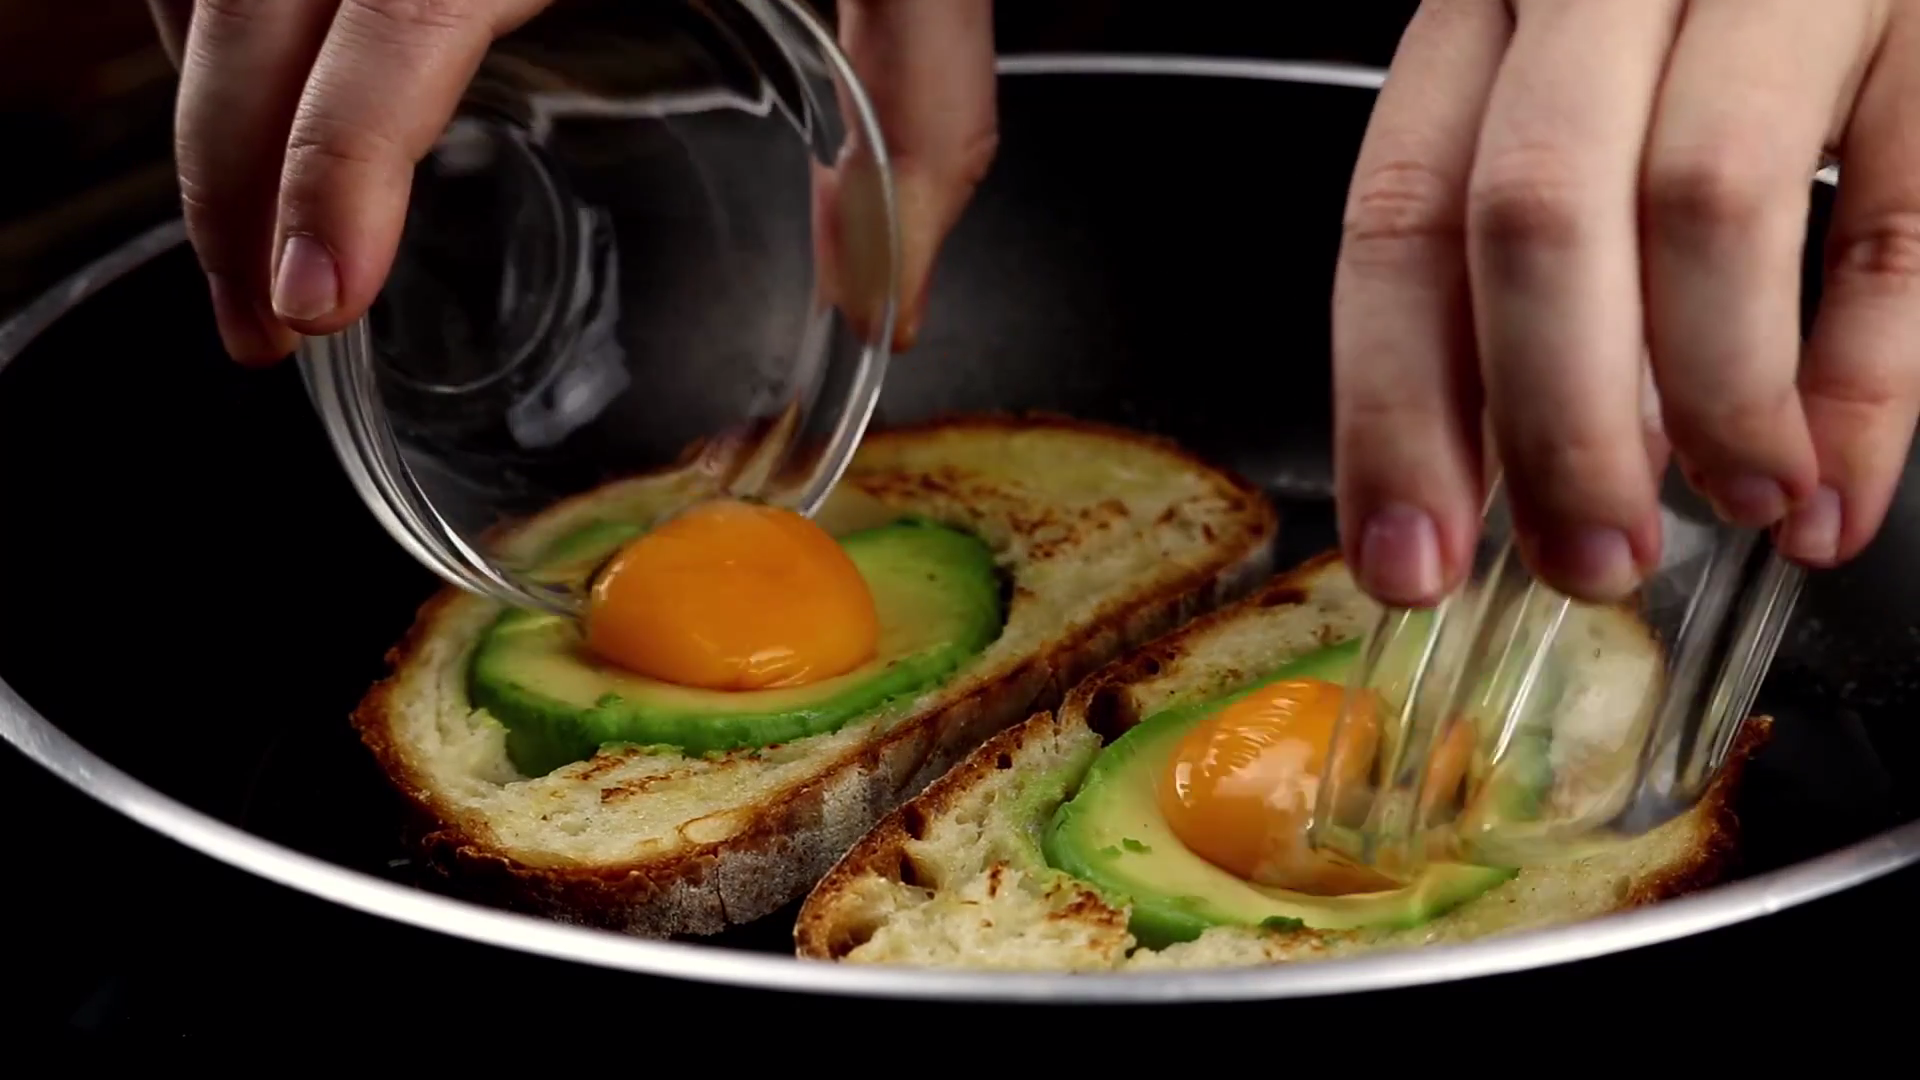 Je ein Ei wird in eine Brotscheibe mit Avocado gegeben